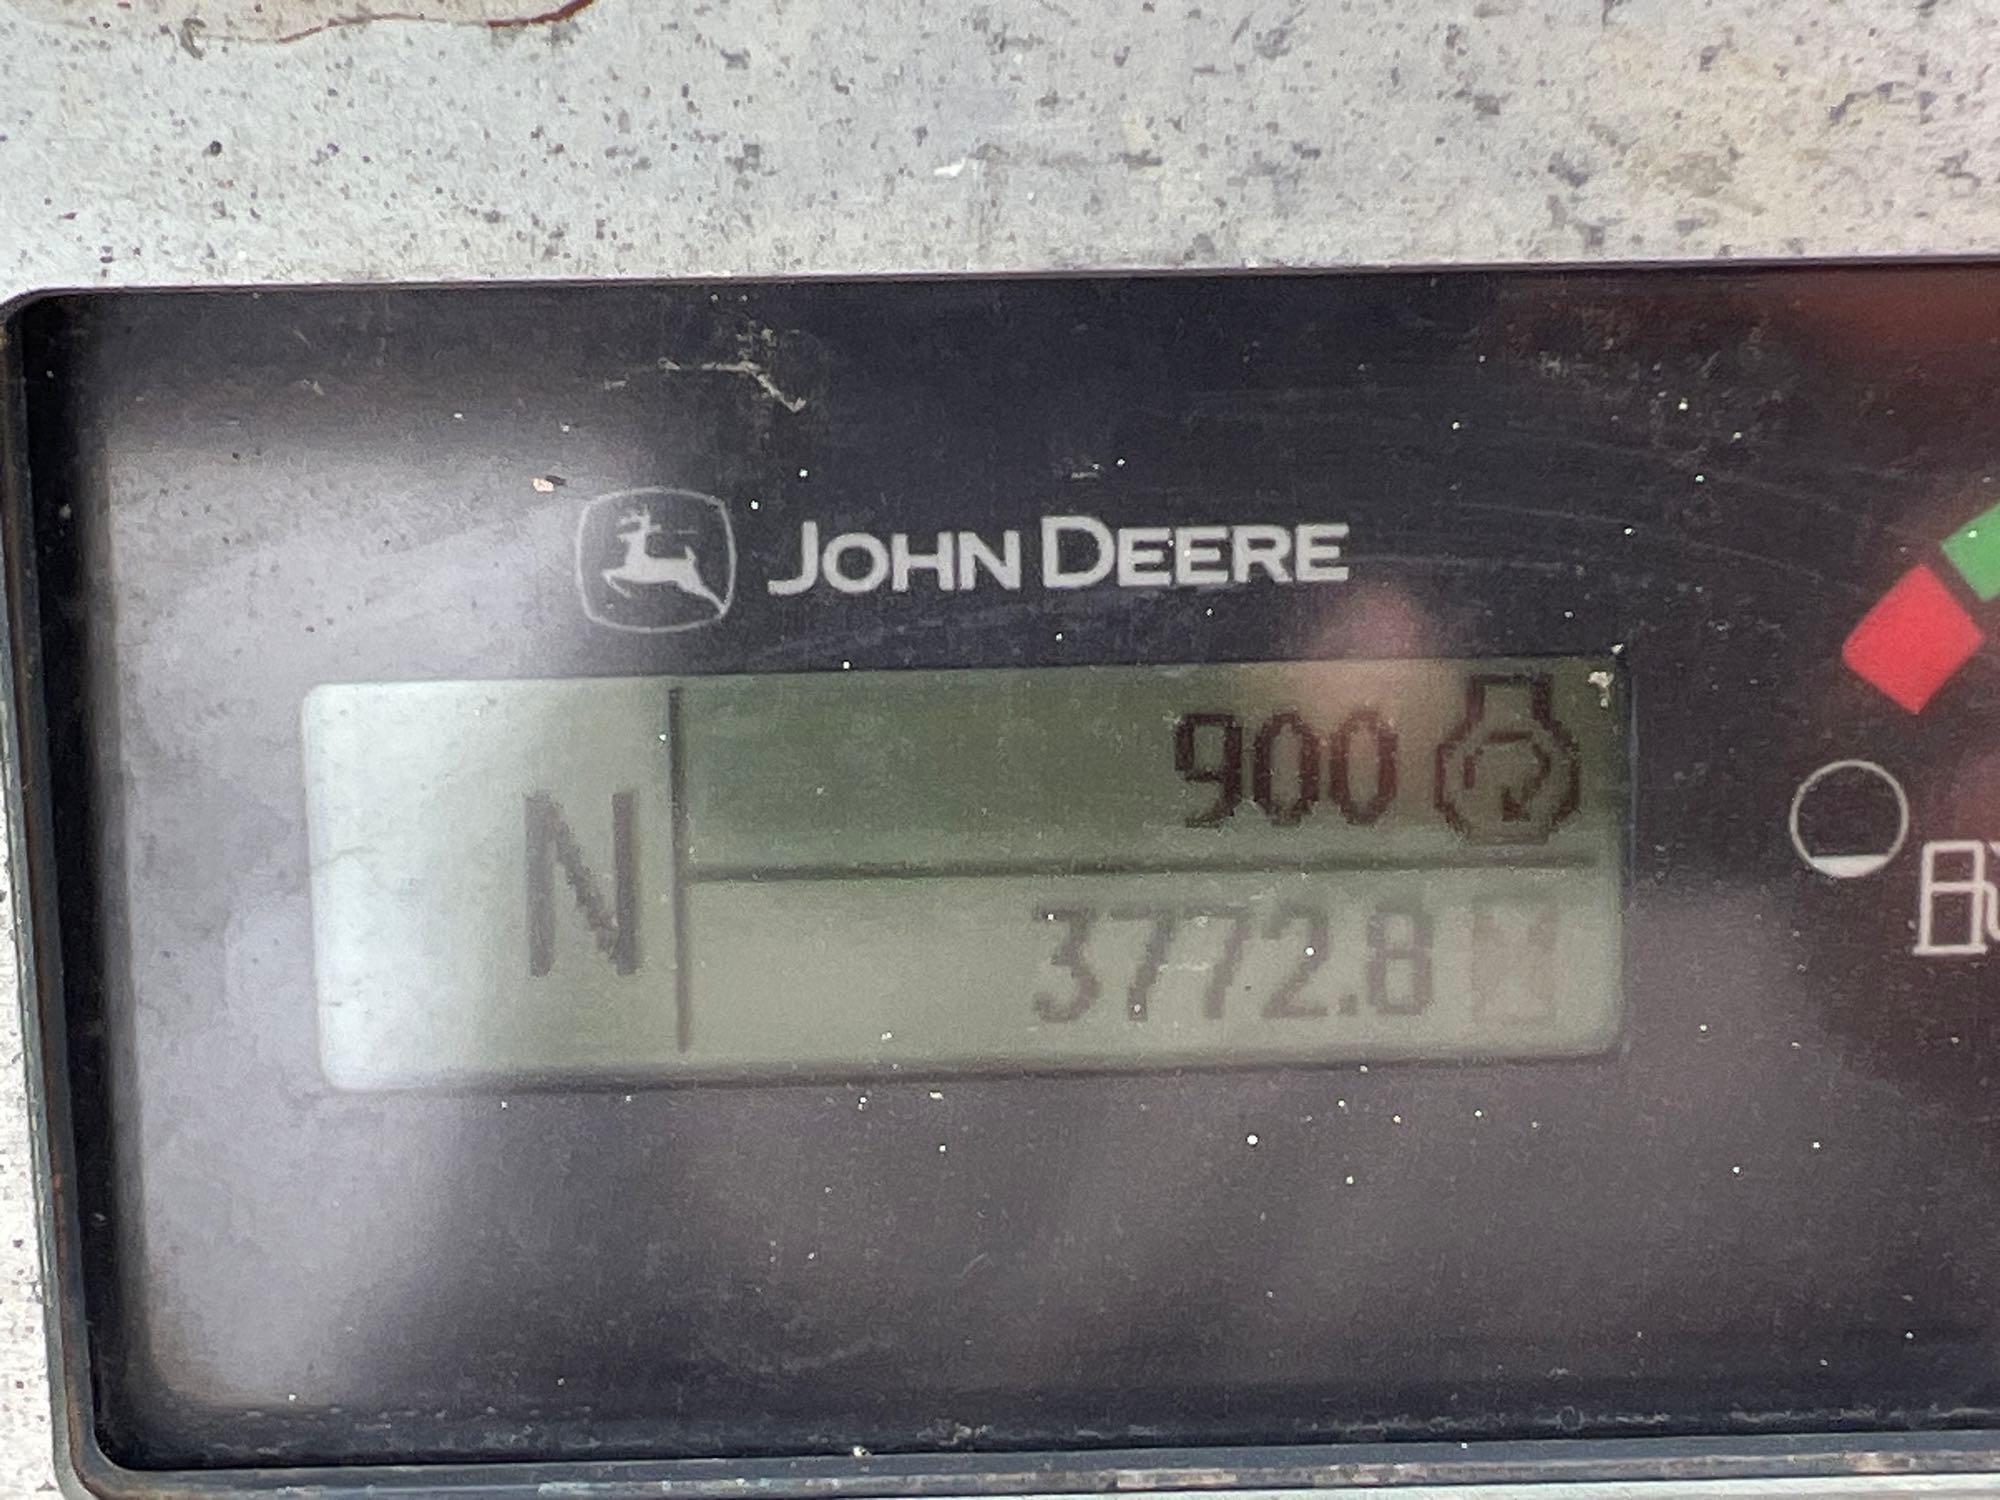 2012 JOHN DEERE 310K TRACTOR LOADER BACKHOE SN:258757 powered by John Deere diesel engine, equipped